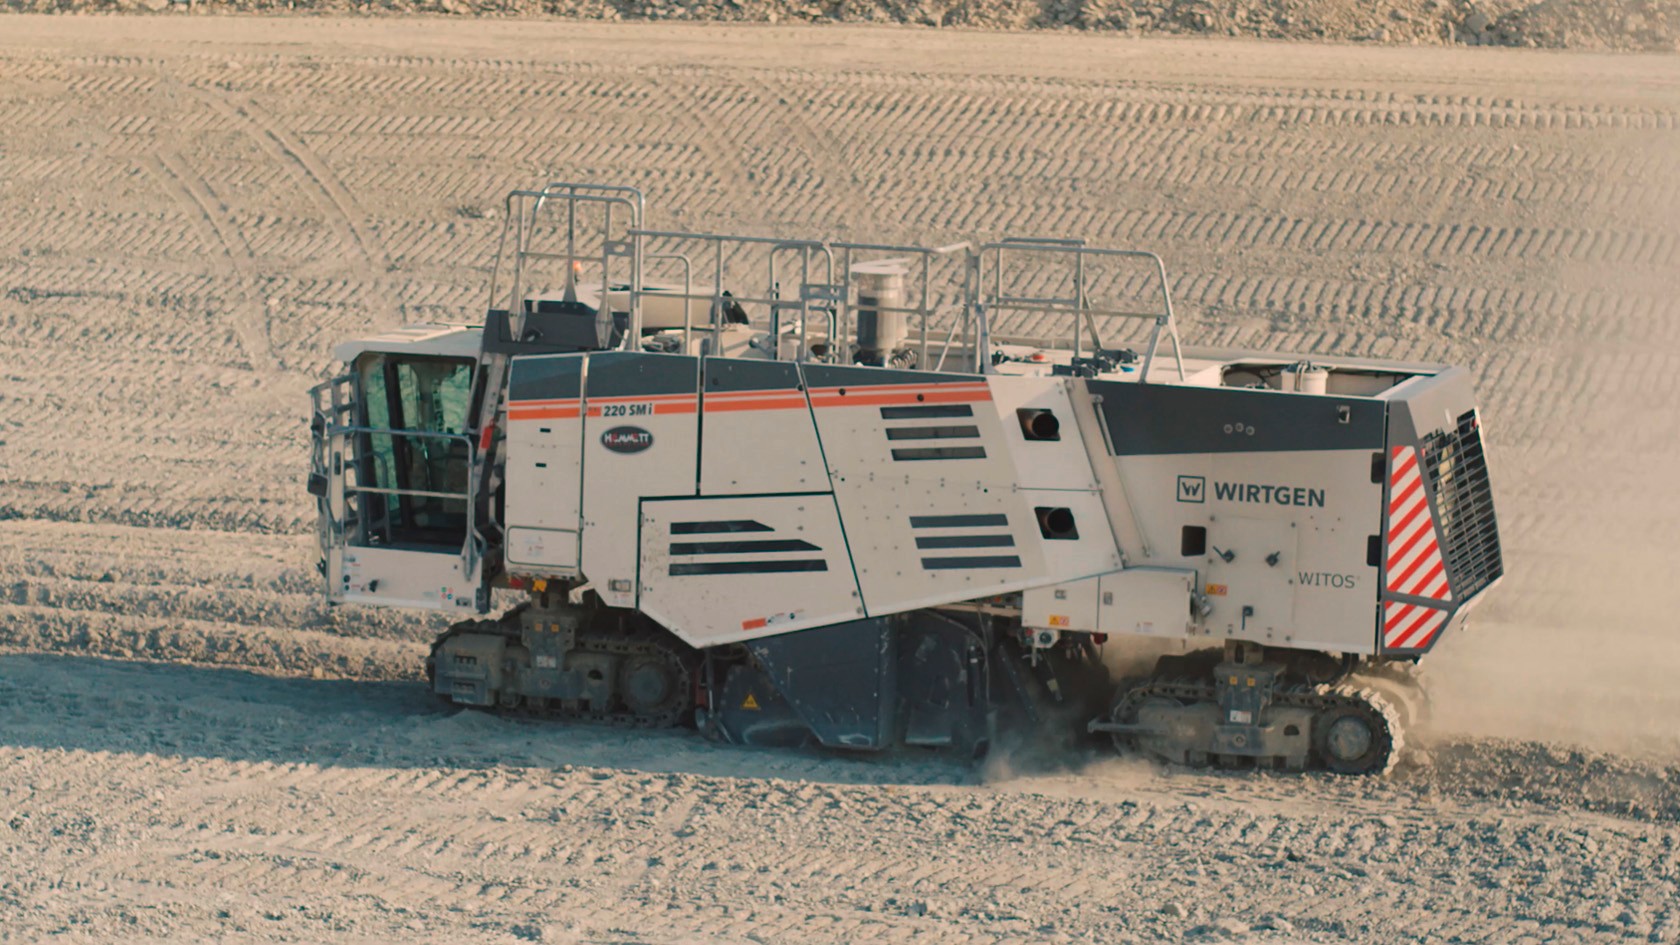  Il Surface Miner 220 SMI durante il tracciamento del terreno